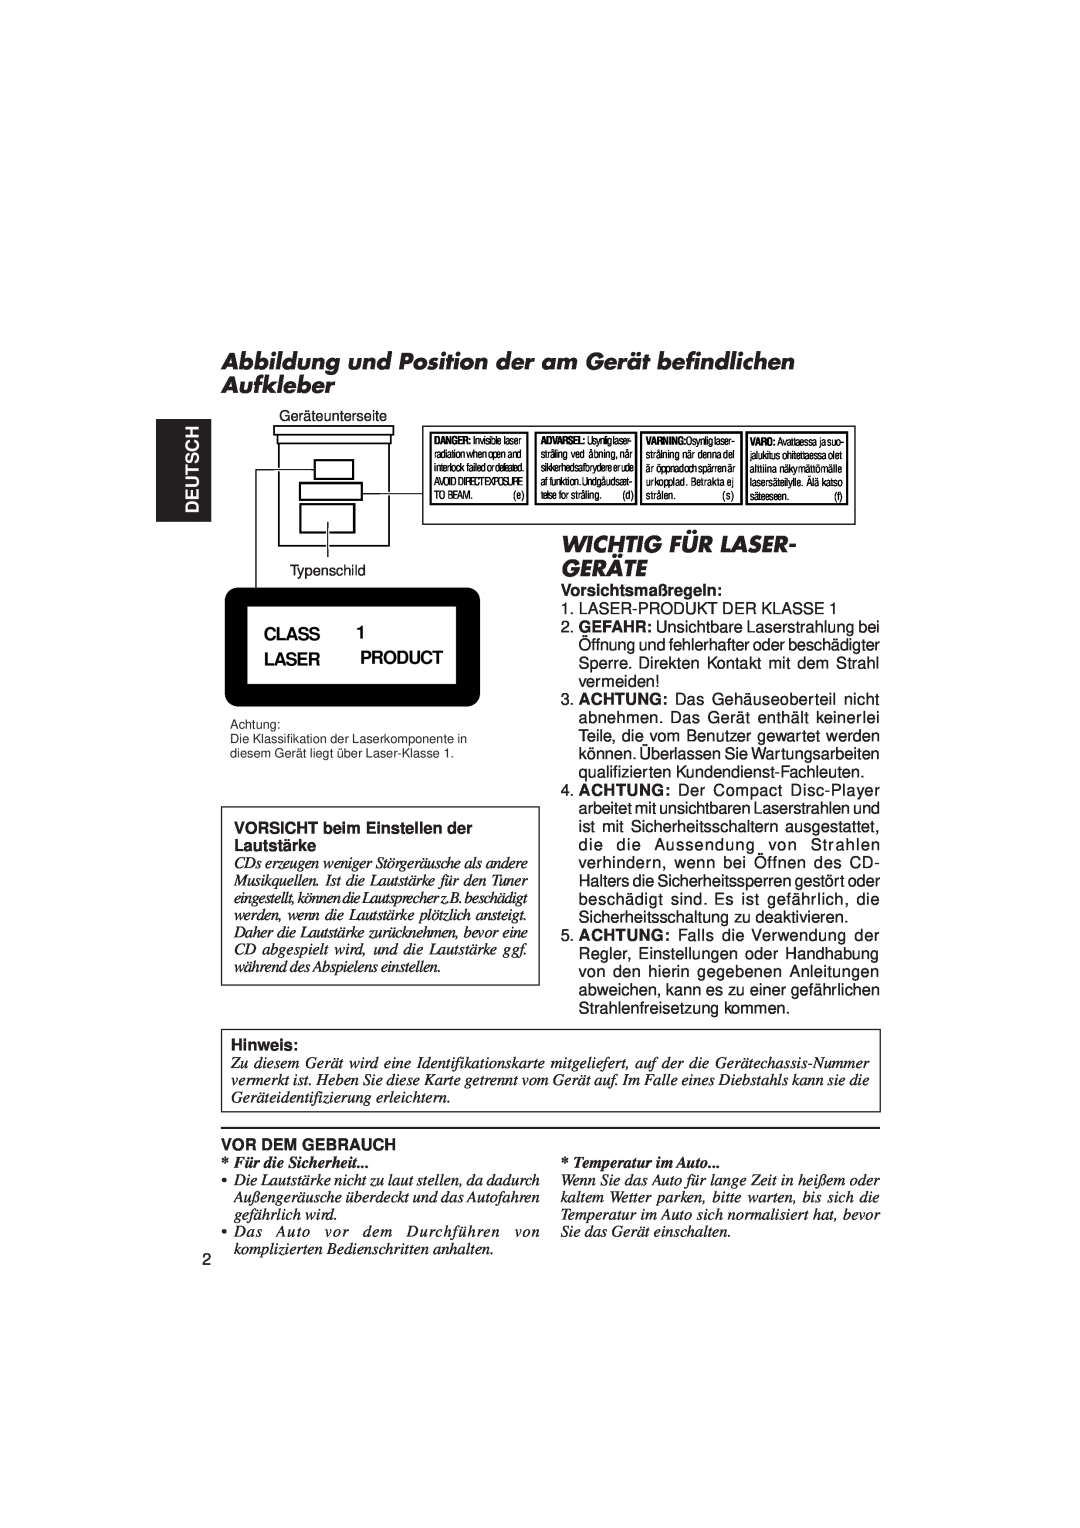 JVC KD-LX3R manual Deutsch, Class Laser Product, VORSICHT beim Einstellen der Lautstärke, Vorsichtsmaßregeln, Hinweis 